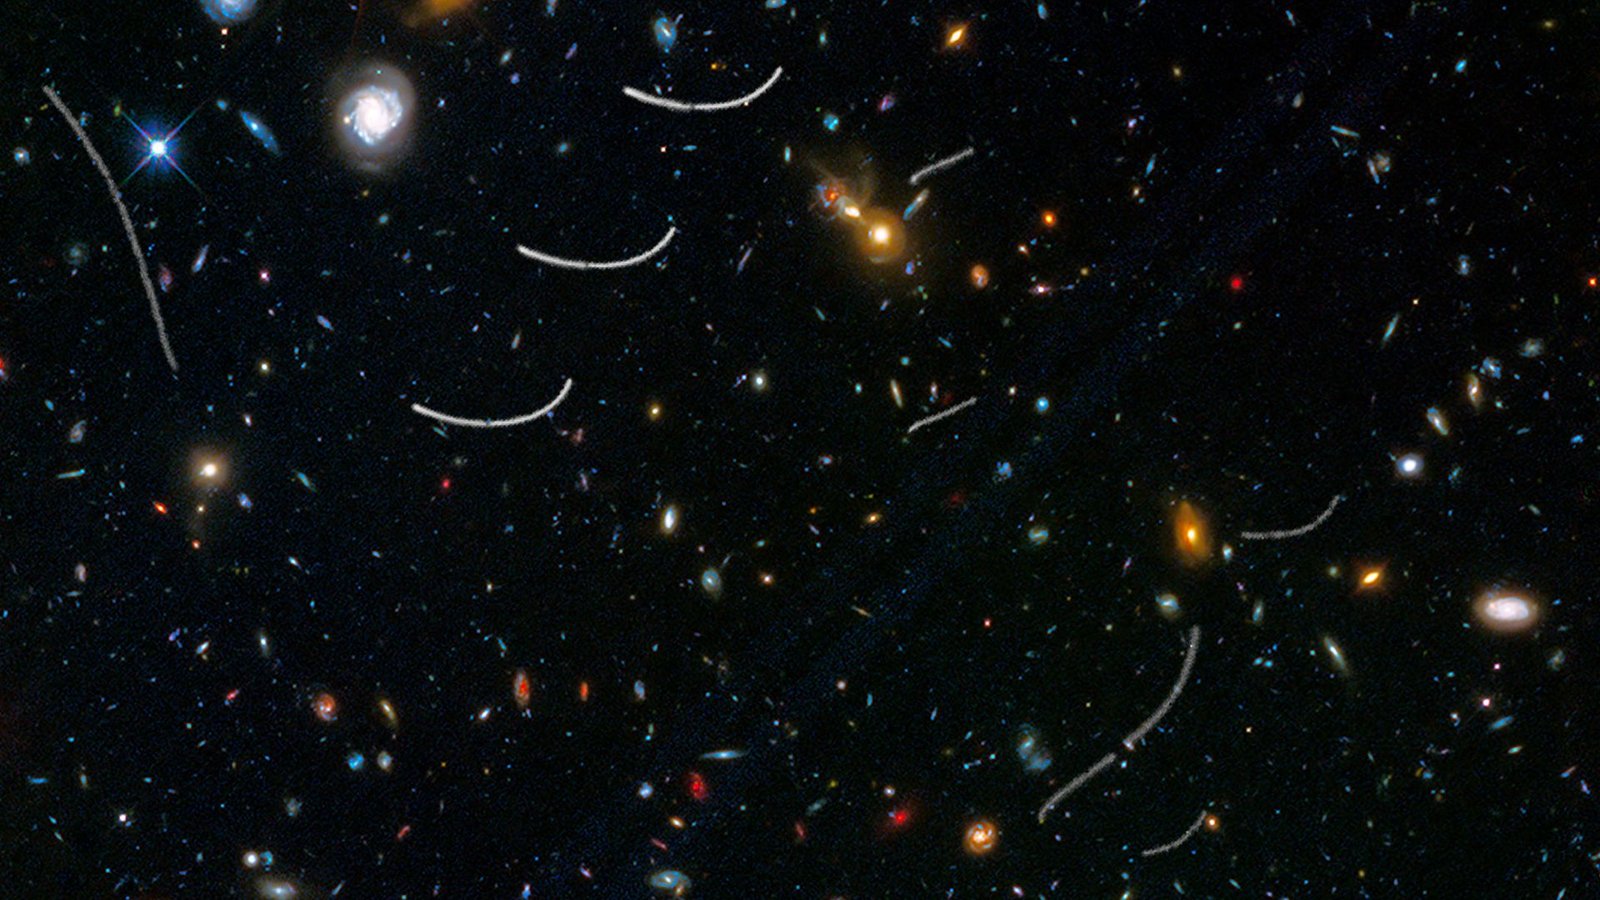 Für das Bild wurden Aufnahmen des Weltraumteleskops Hubble übereinander gelegt. Es zeigt die Bahnen mehrerer Asteroiden (weiße Linien).Foto: NASA, ESA, and B. Sunnquist and J. Mack (STScI)/Acknowledgment: NASA, ESA, and J. Lotz (STScI) and the HFF Team/dpa